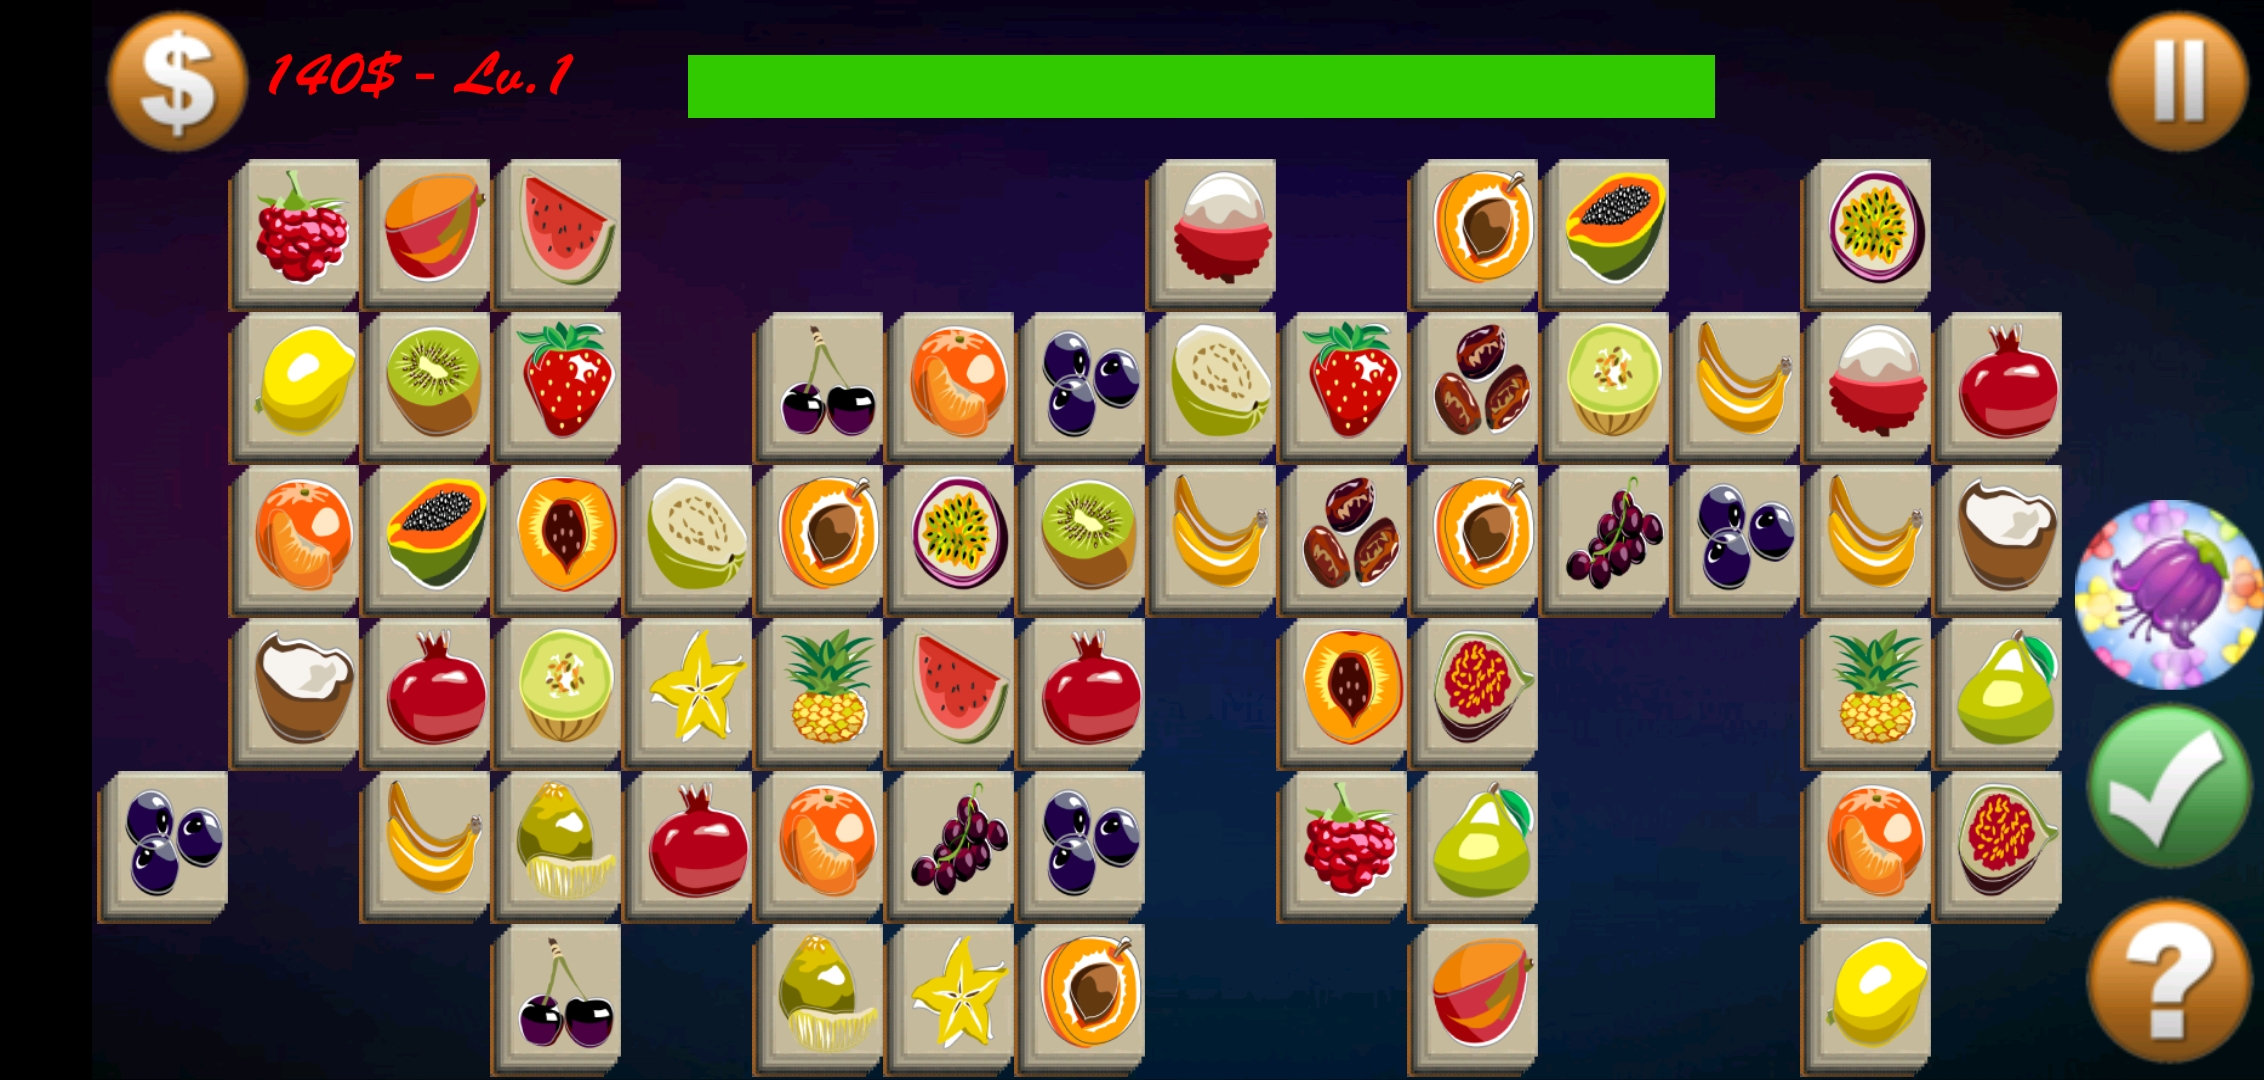 Screenshot 1 of Fruit Connect Legend – AUF SPASS 2.51